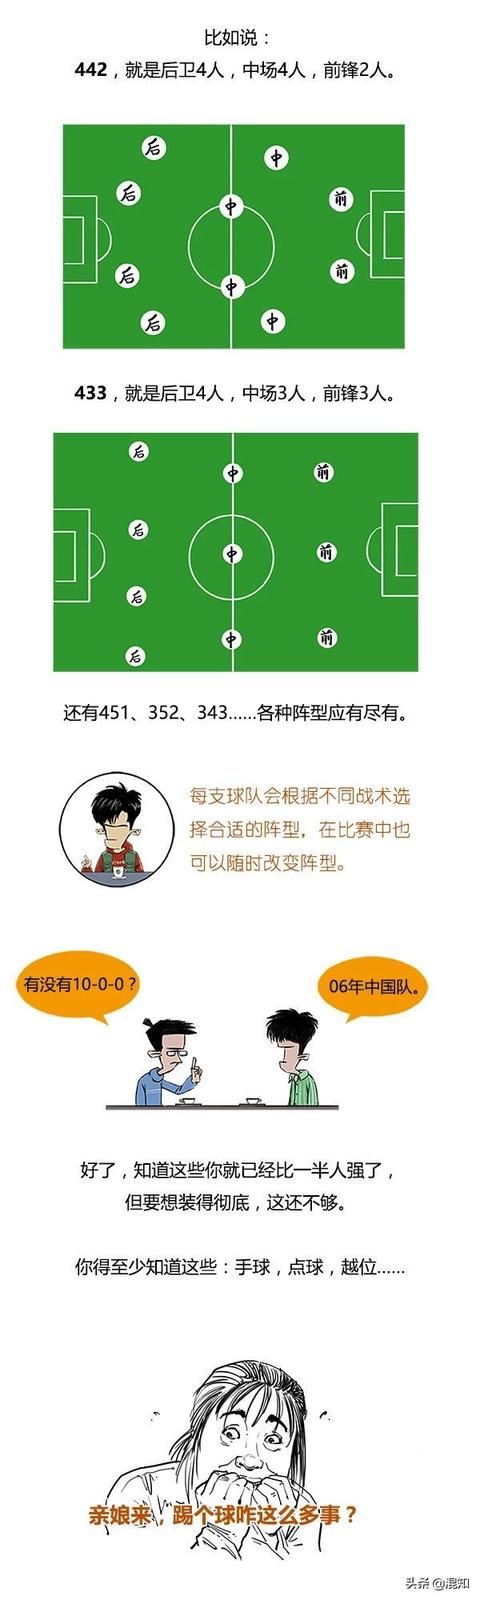 新手如何开始学足球,0基础学足球的步骤(4)